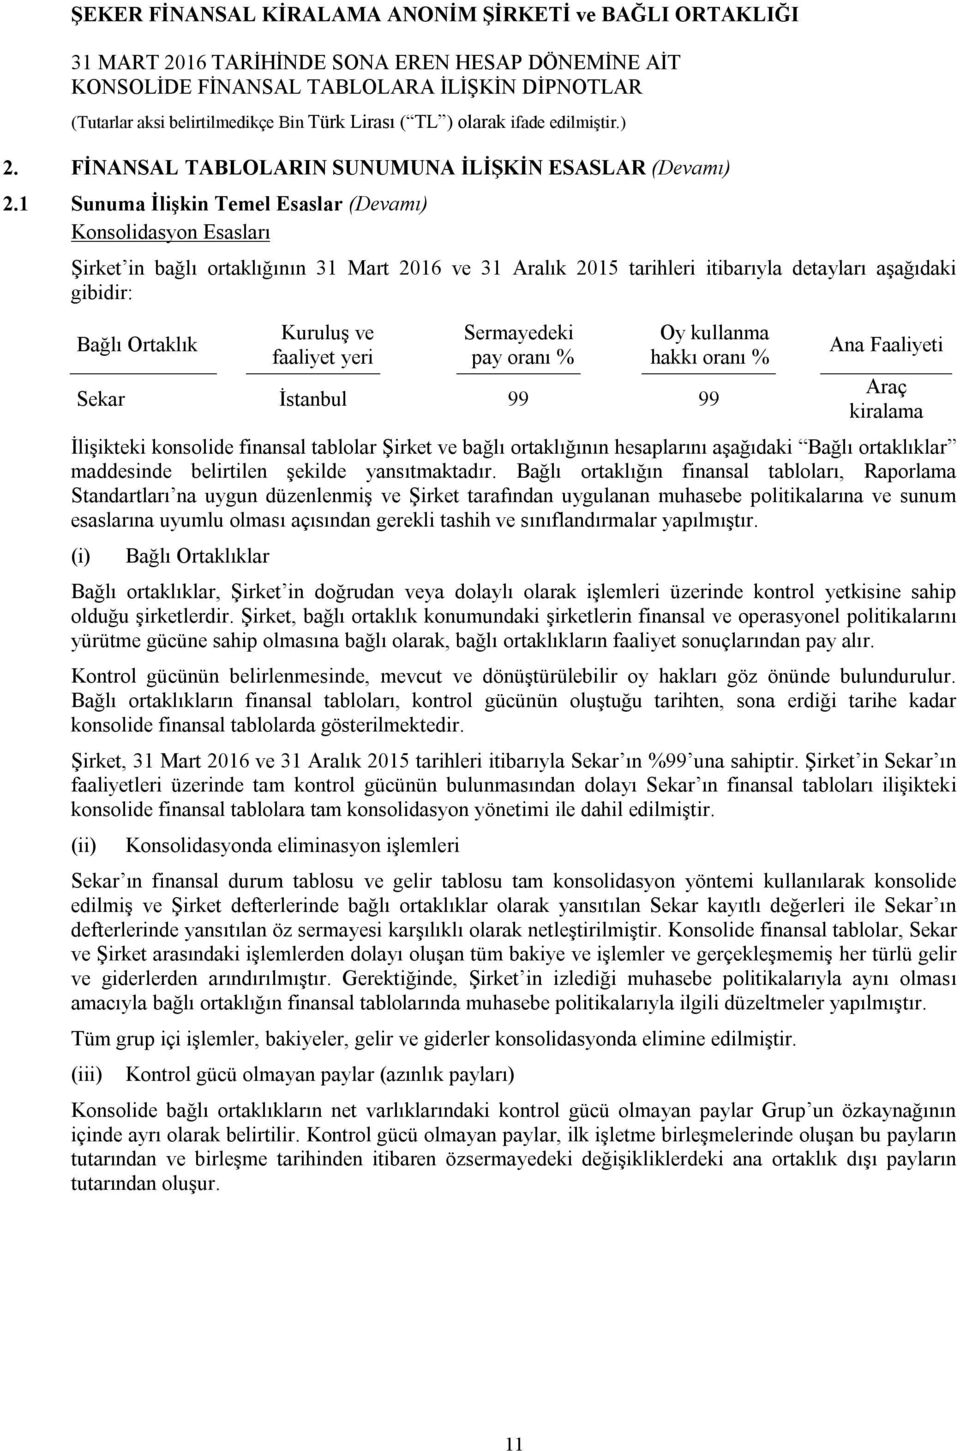 faaliyet yeri Sermayedeki pay oranı % Oy kullanma hakkı oranı % Sekar İstanbul 99 99 Ana Faaliyeti Araç kiralama İlişikteki konsolide finansal tablolar Şirket ve bağlı ortaklığının hesaplarını